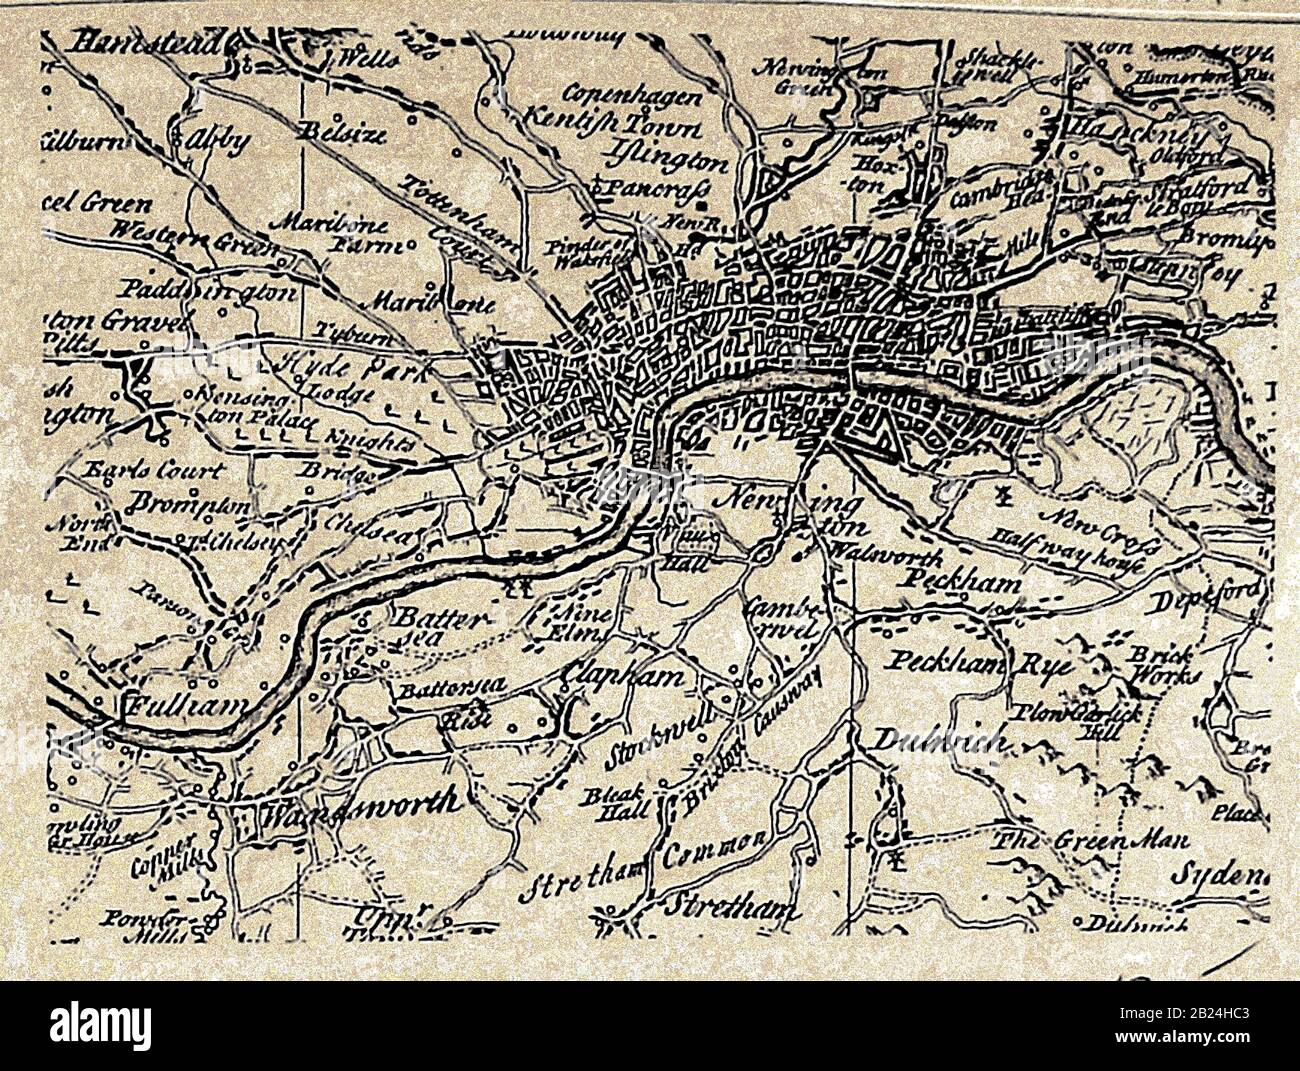 Une carte de la ville de Londres (UK) , villages, auberges, environs etc dans les années 1700, avec des orthographes à cette époque Banque D'Images